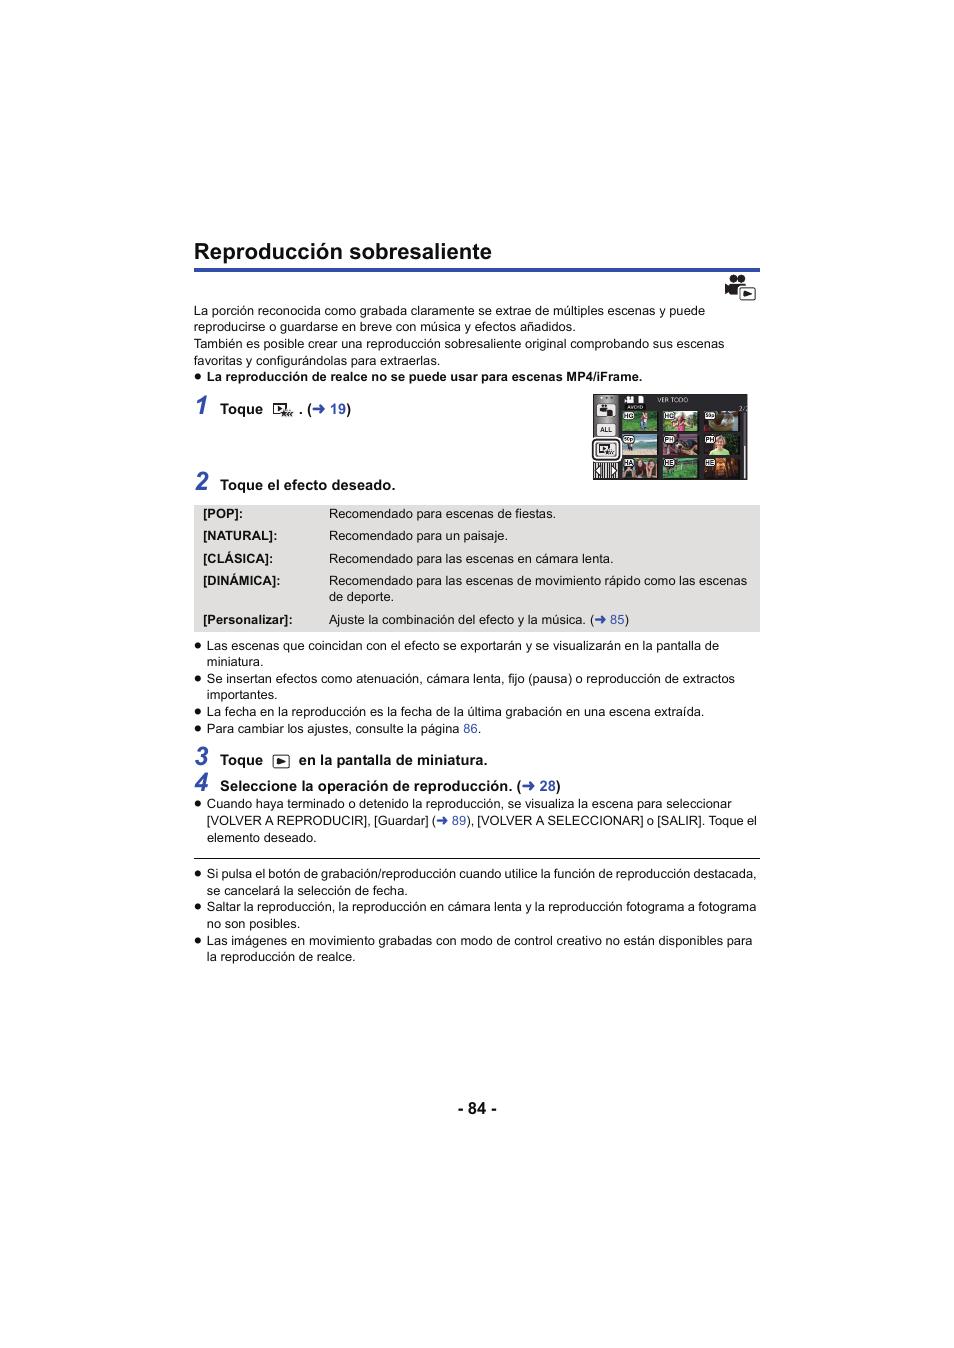 Reproducción sobresaliente | Panasonic HCV250EC Manual del usuario | Página 84 / 214